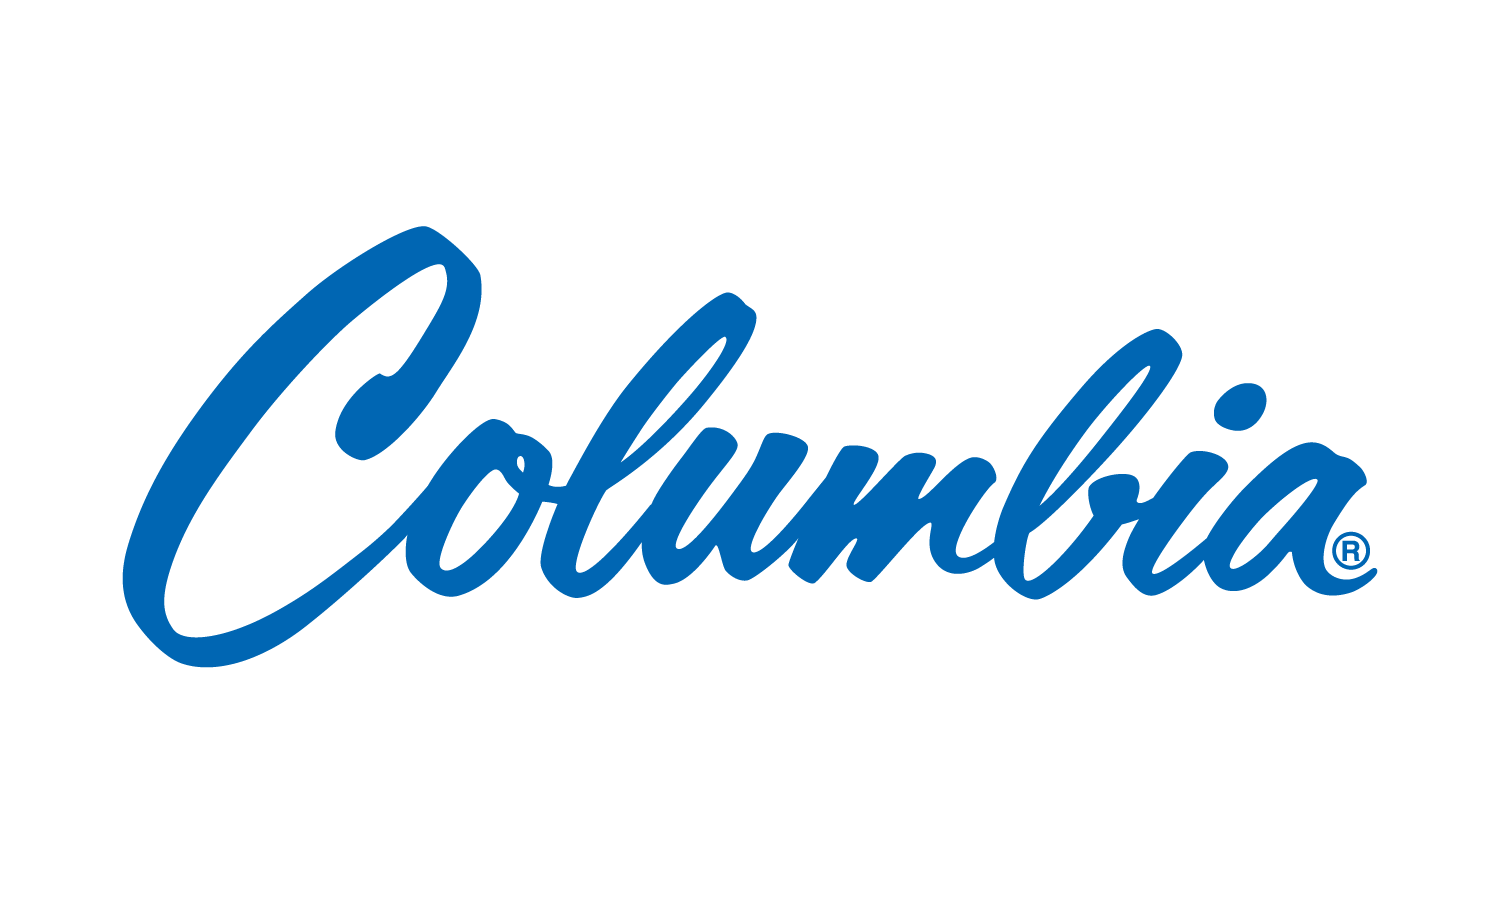 https://columbiamachine.com/wp-content/uploads/sites/2/2018/12/colmac_logo-blue-1.png